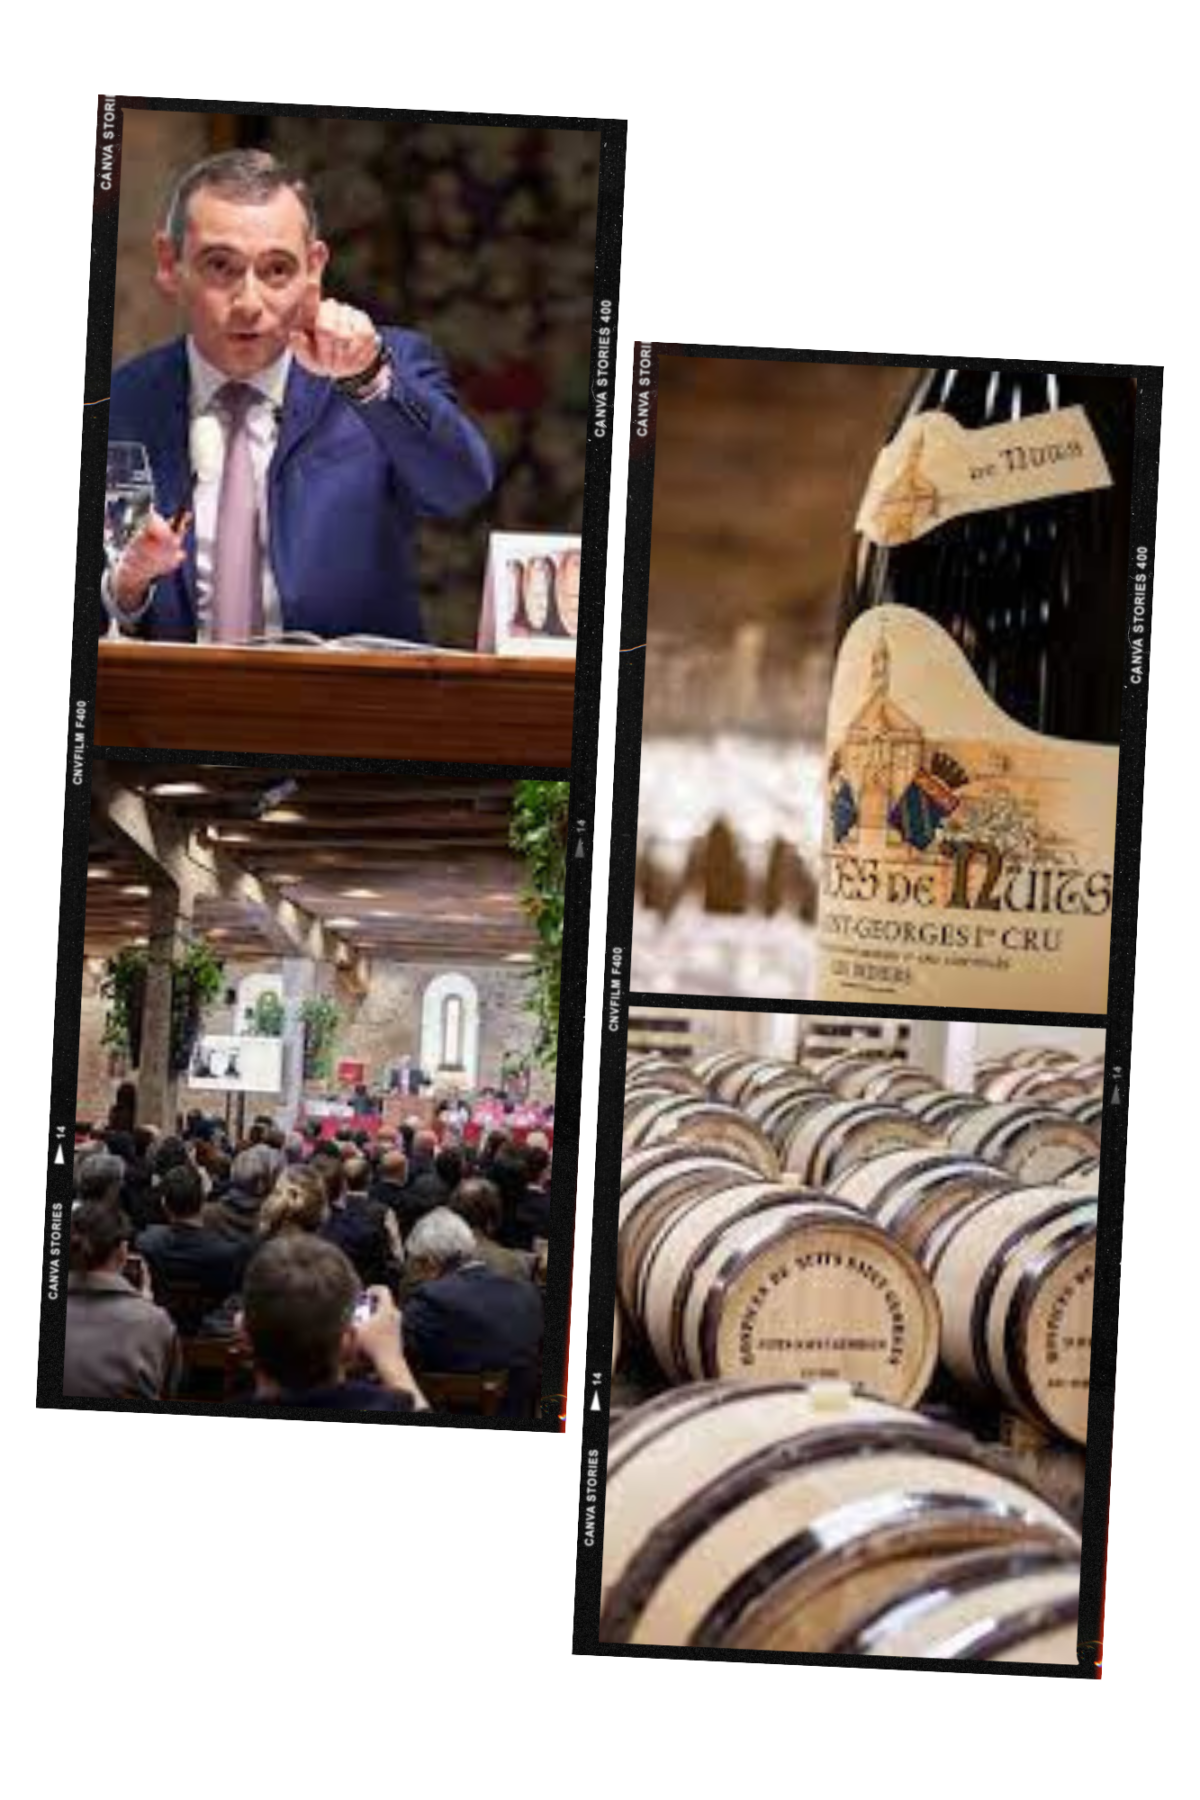 Hospices de Nuits-Saint-Georges Wine Auction Raises €3,603,000 For Charity